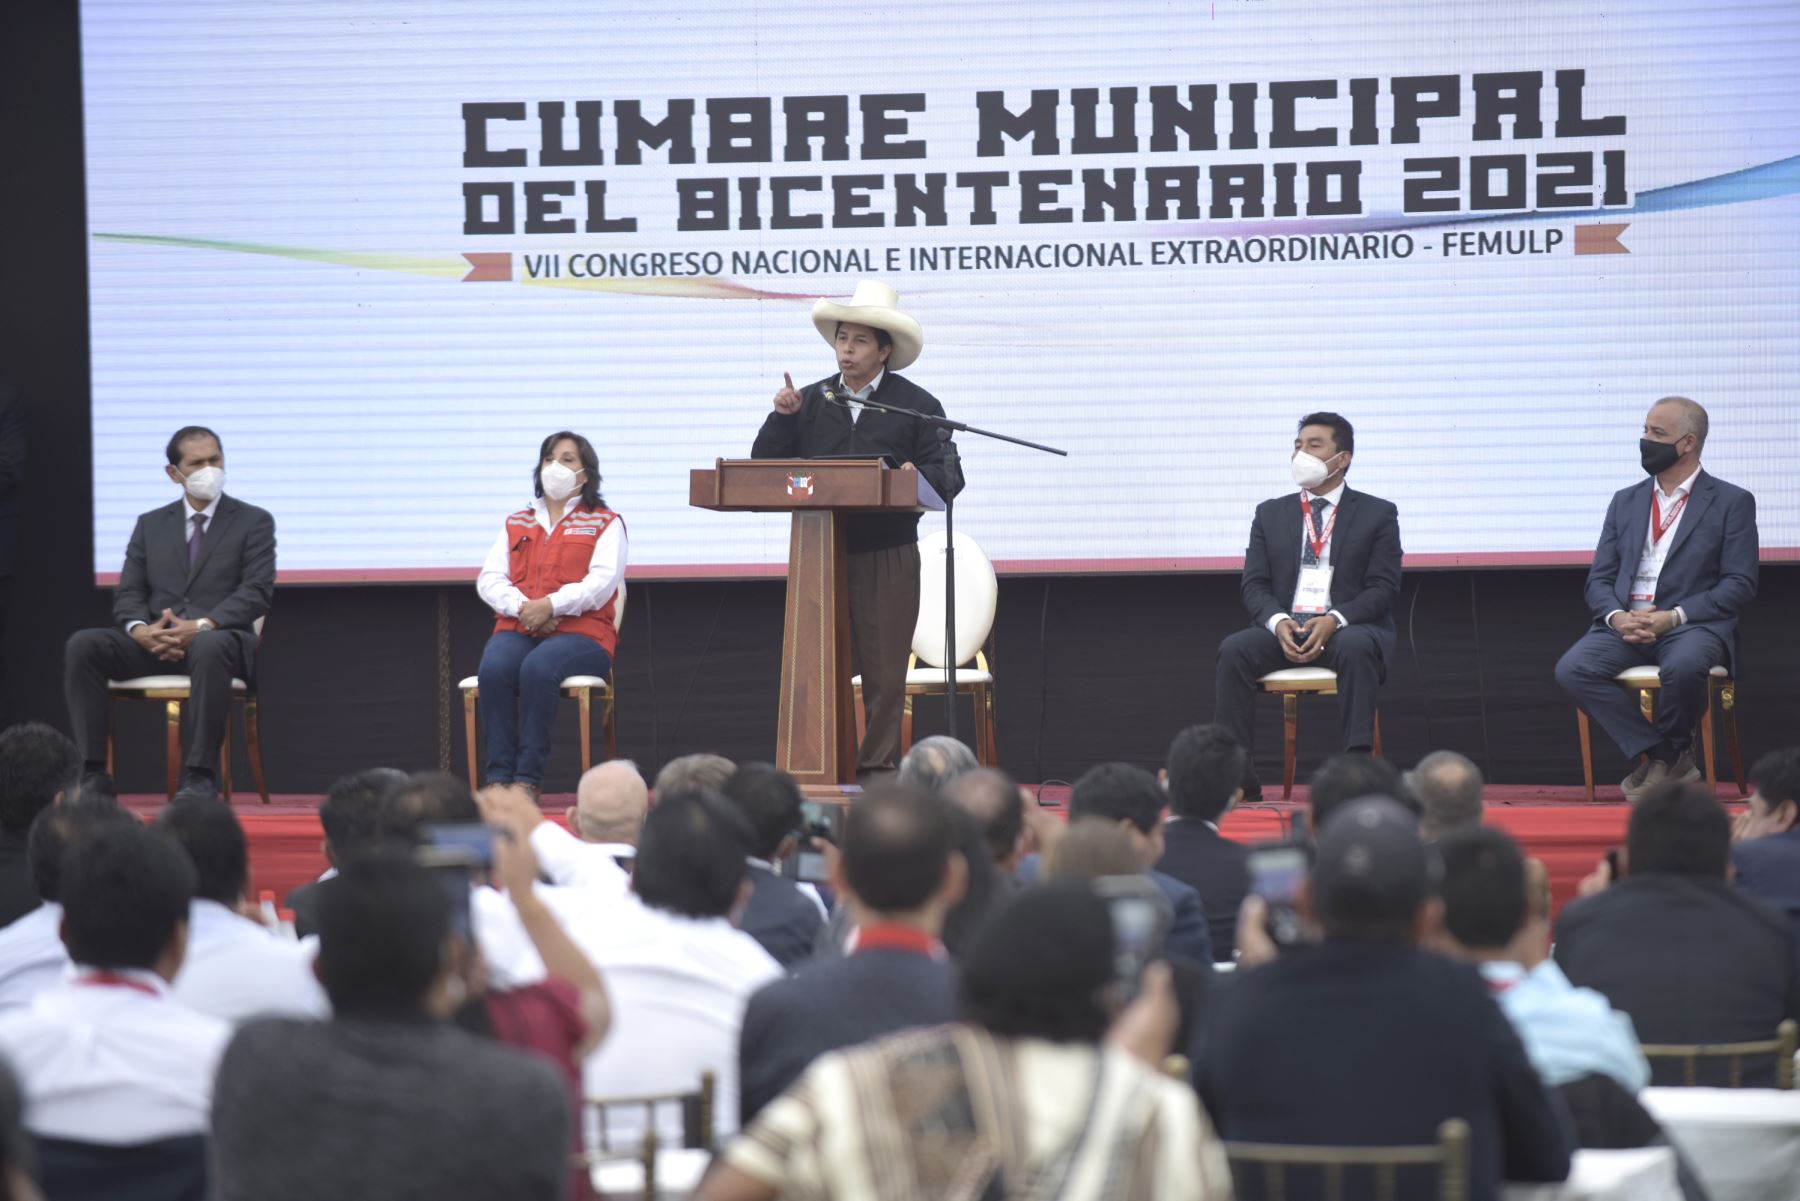 El presidente de la República, Pedro Castillo, asiste a la clausura de la Cumbre Municipal del Bicentenario 2021, organizada por la Federación de Municipios Libres del Perú, en el distrito de Ate. Foto: ANDINA/Prensa Presidencia